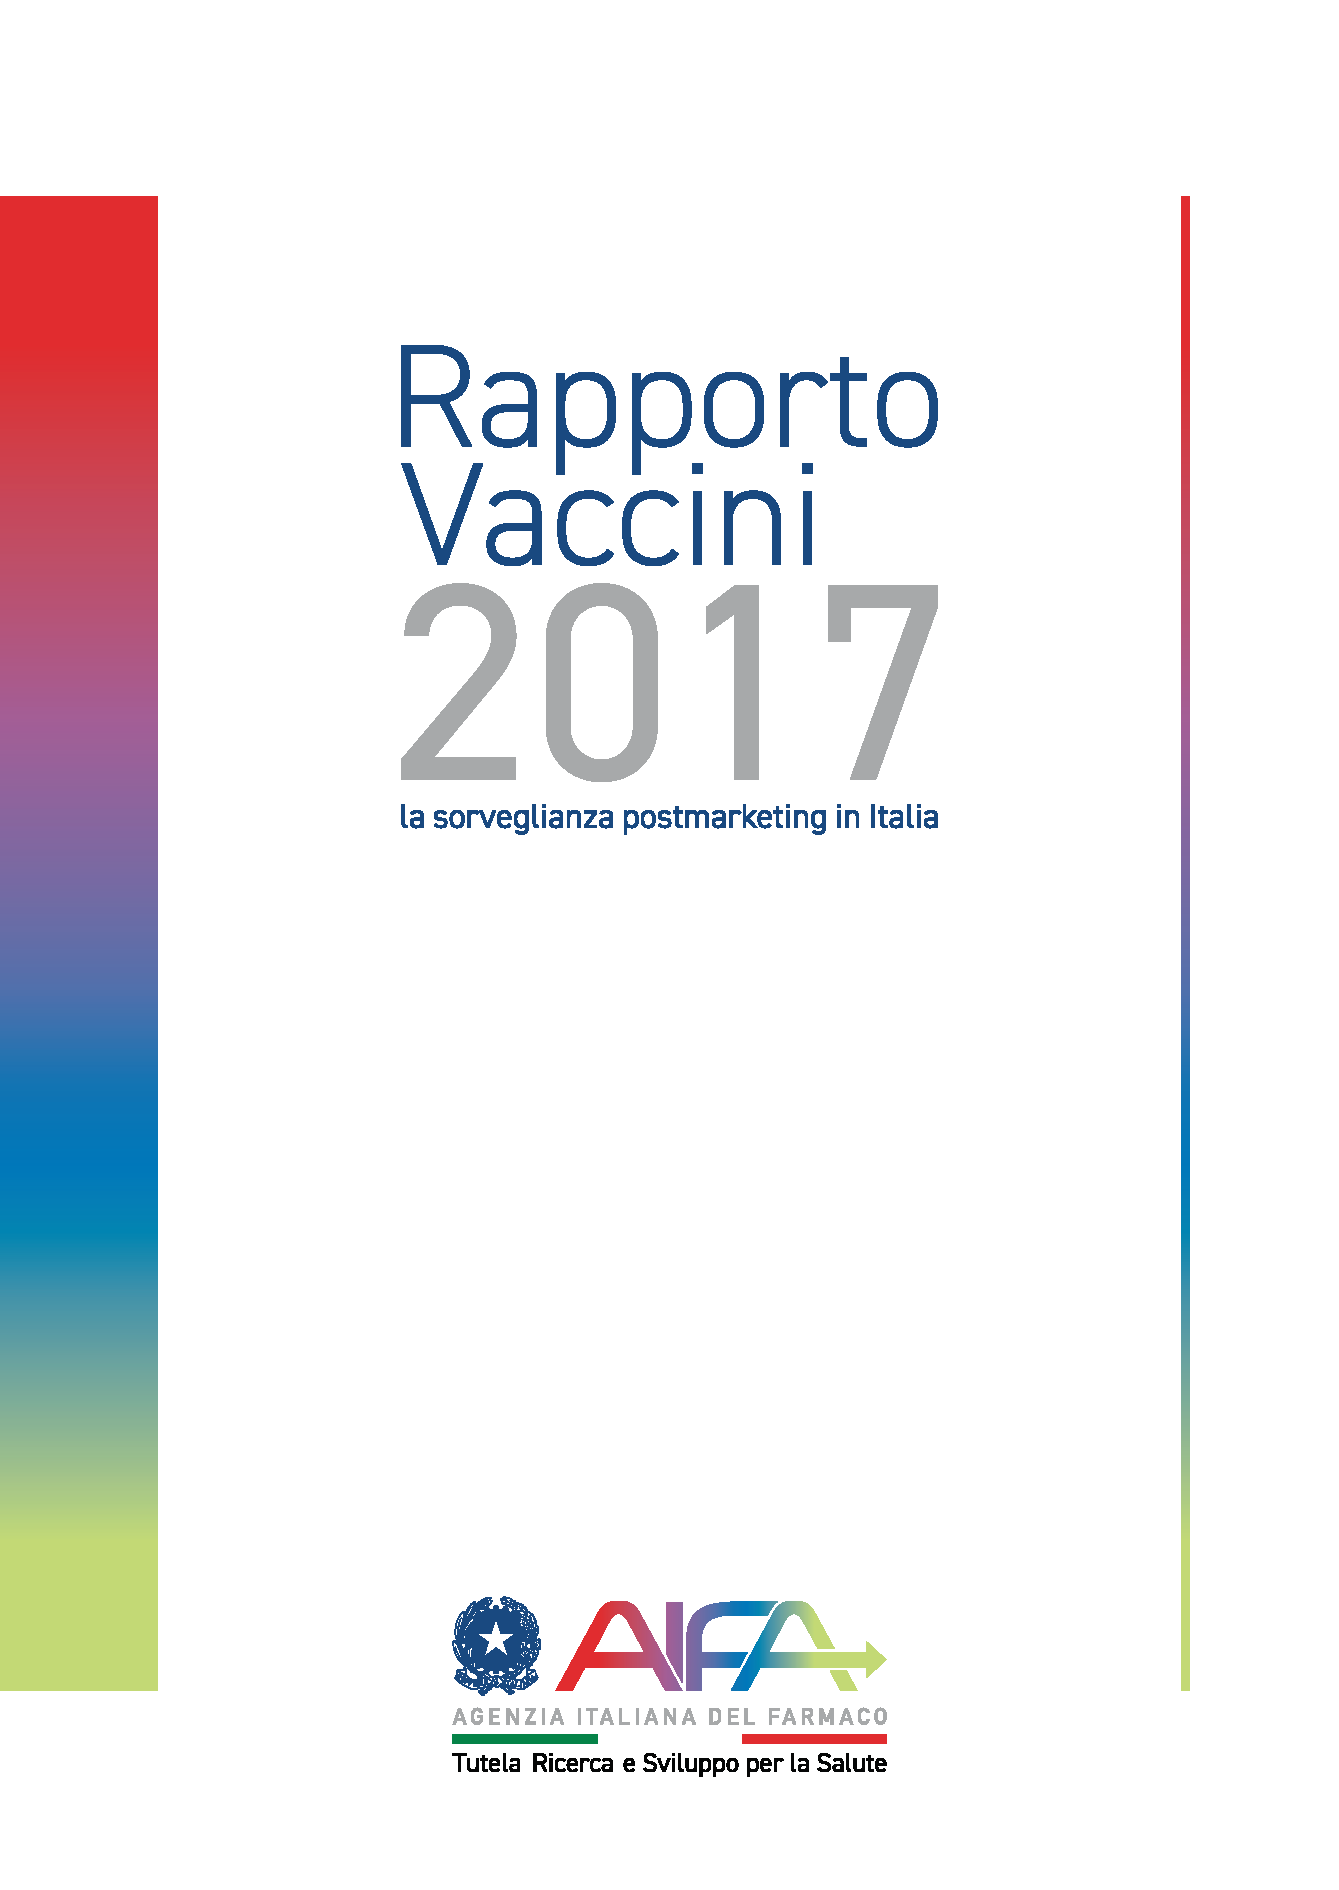 Rapporto Vaccini 2017 Pagina 001